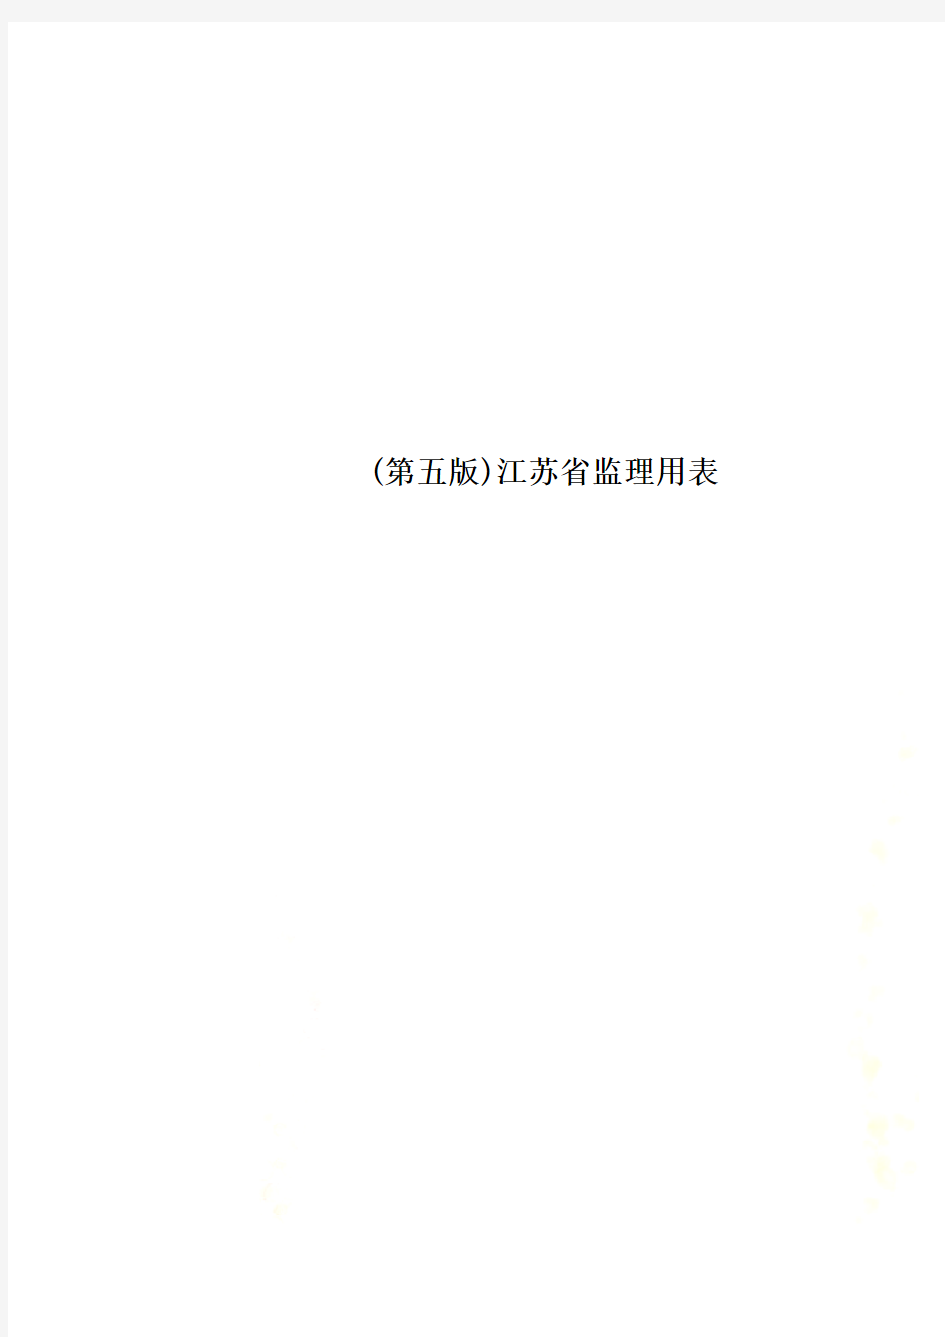 (第五版)江苏省监理用表